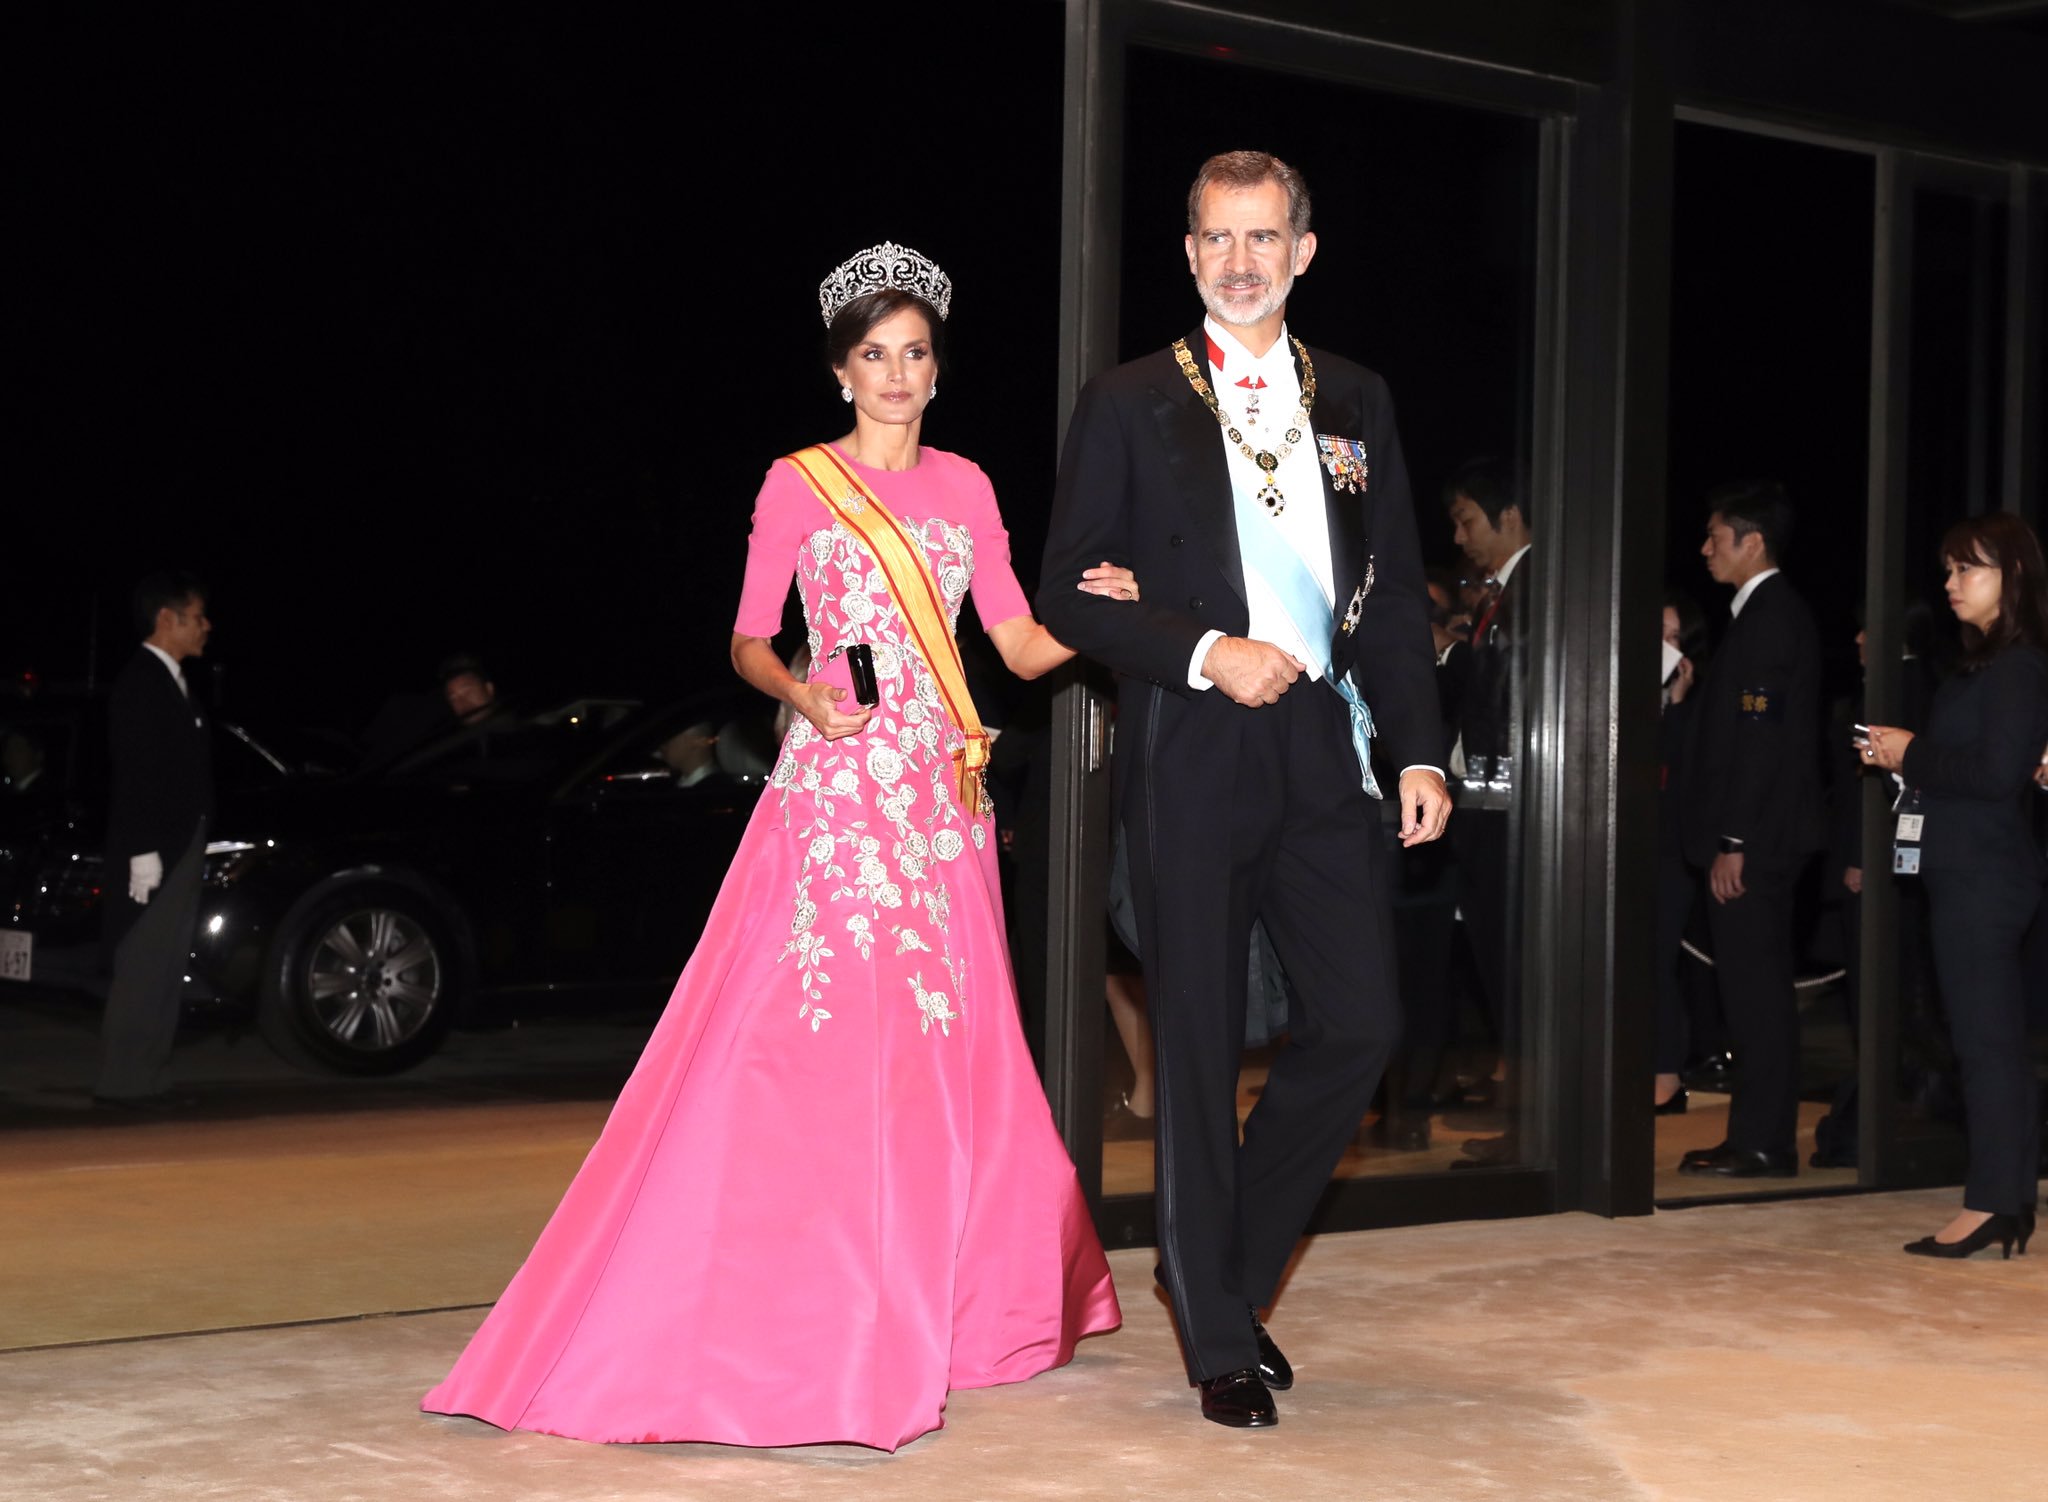 La reina Letizia espectacular con un exclusivo Carolina Herrera hecho a medida en la cena de gala de Japón